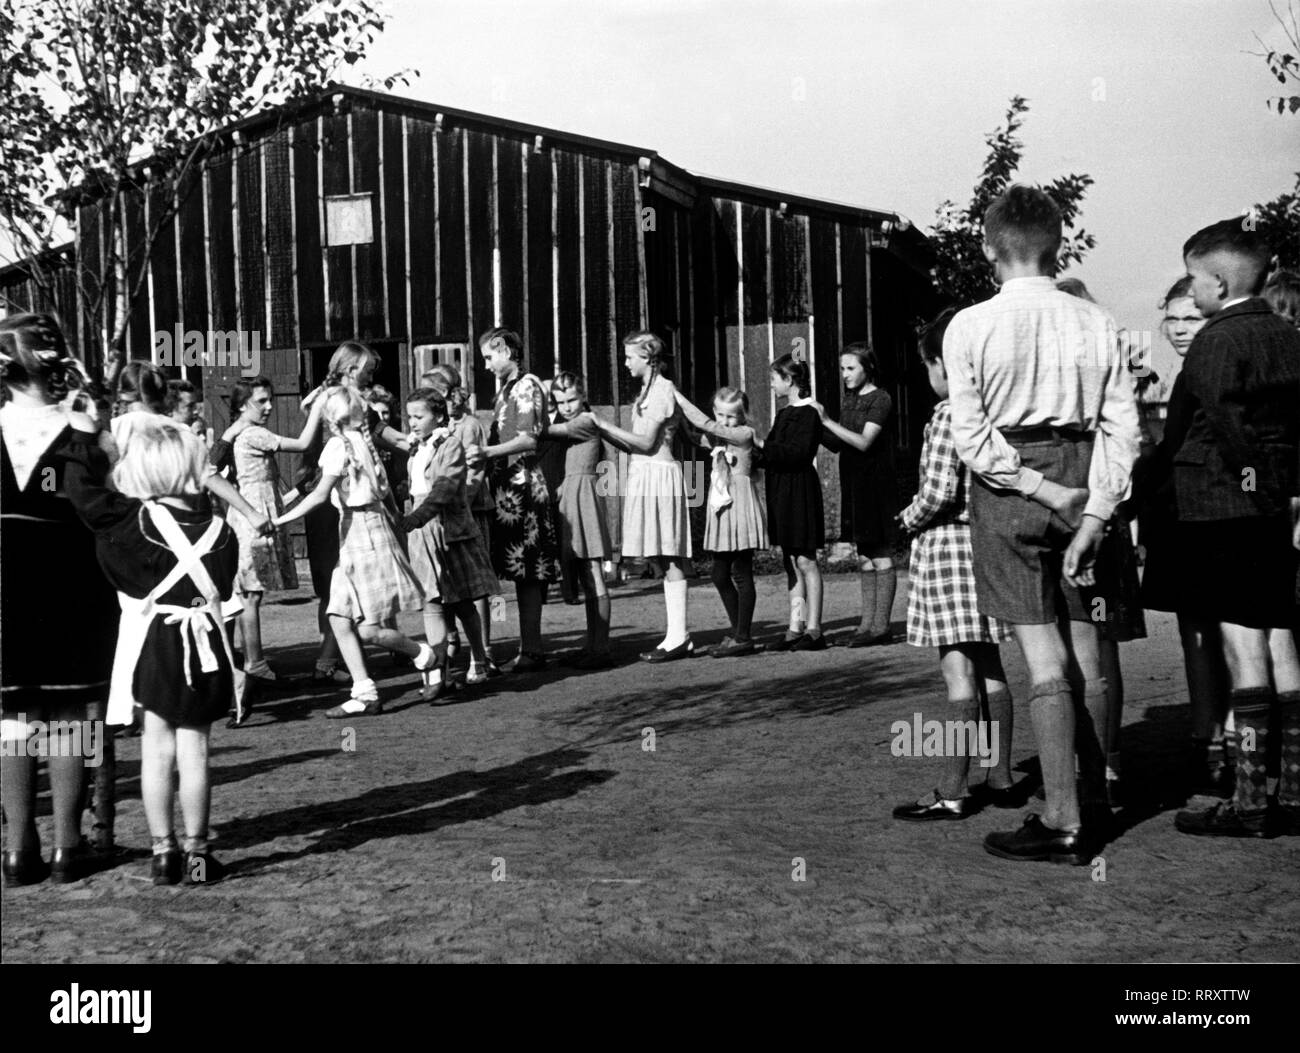 Great-Britain - Kinder auf dem Schulhof, England. School kids having their break, United Kingdom. Aufnahme ca. 1965 Stock Photo